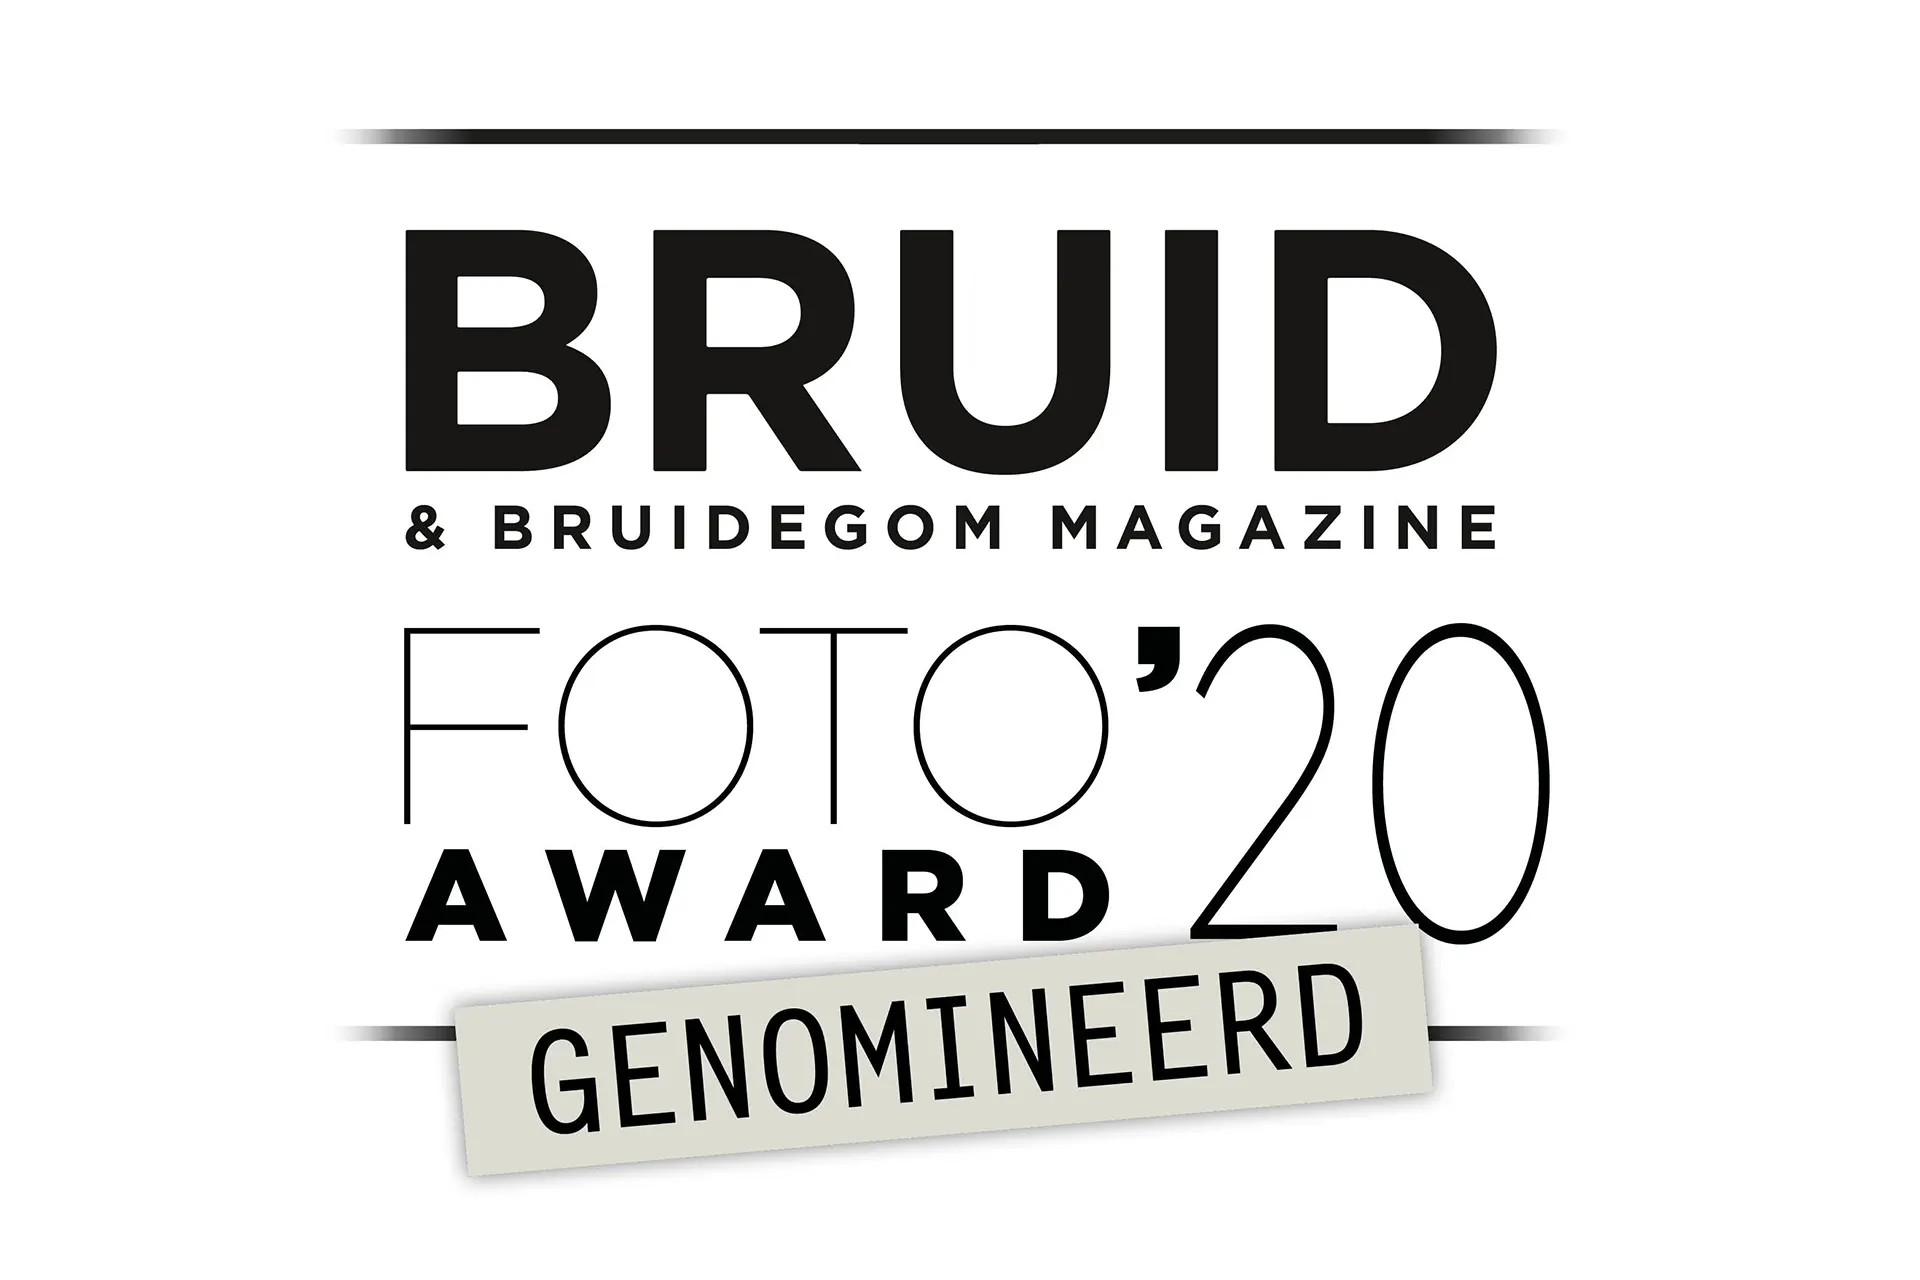 Genomineerd voor de Bruid & Bruidegom magazine foto 2020 award